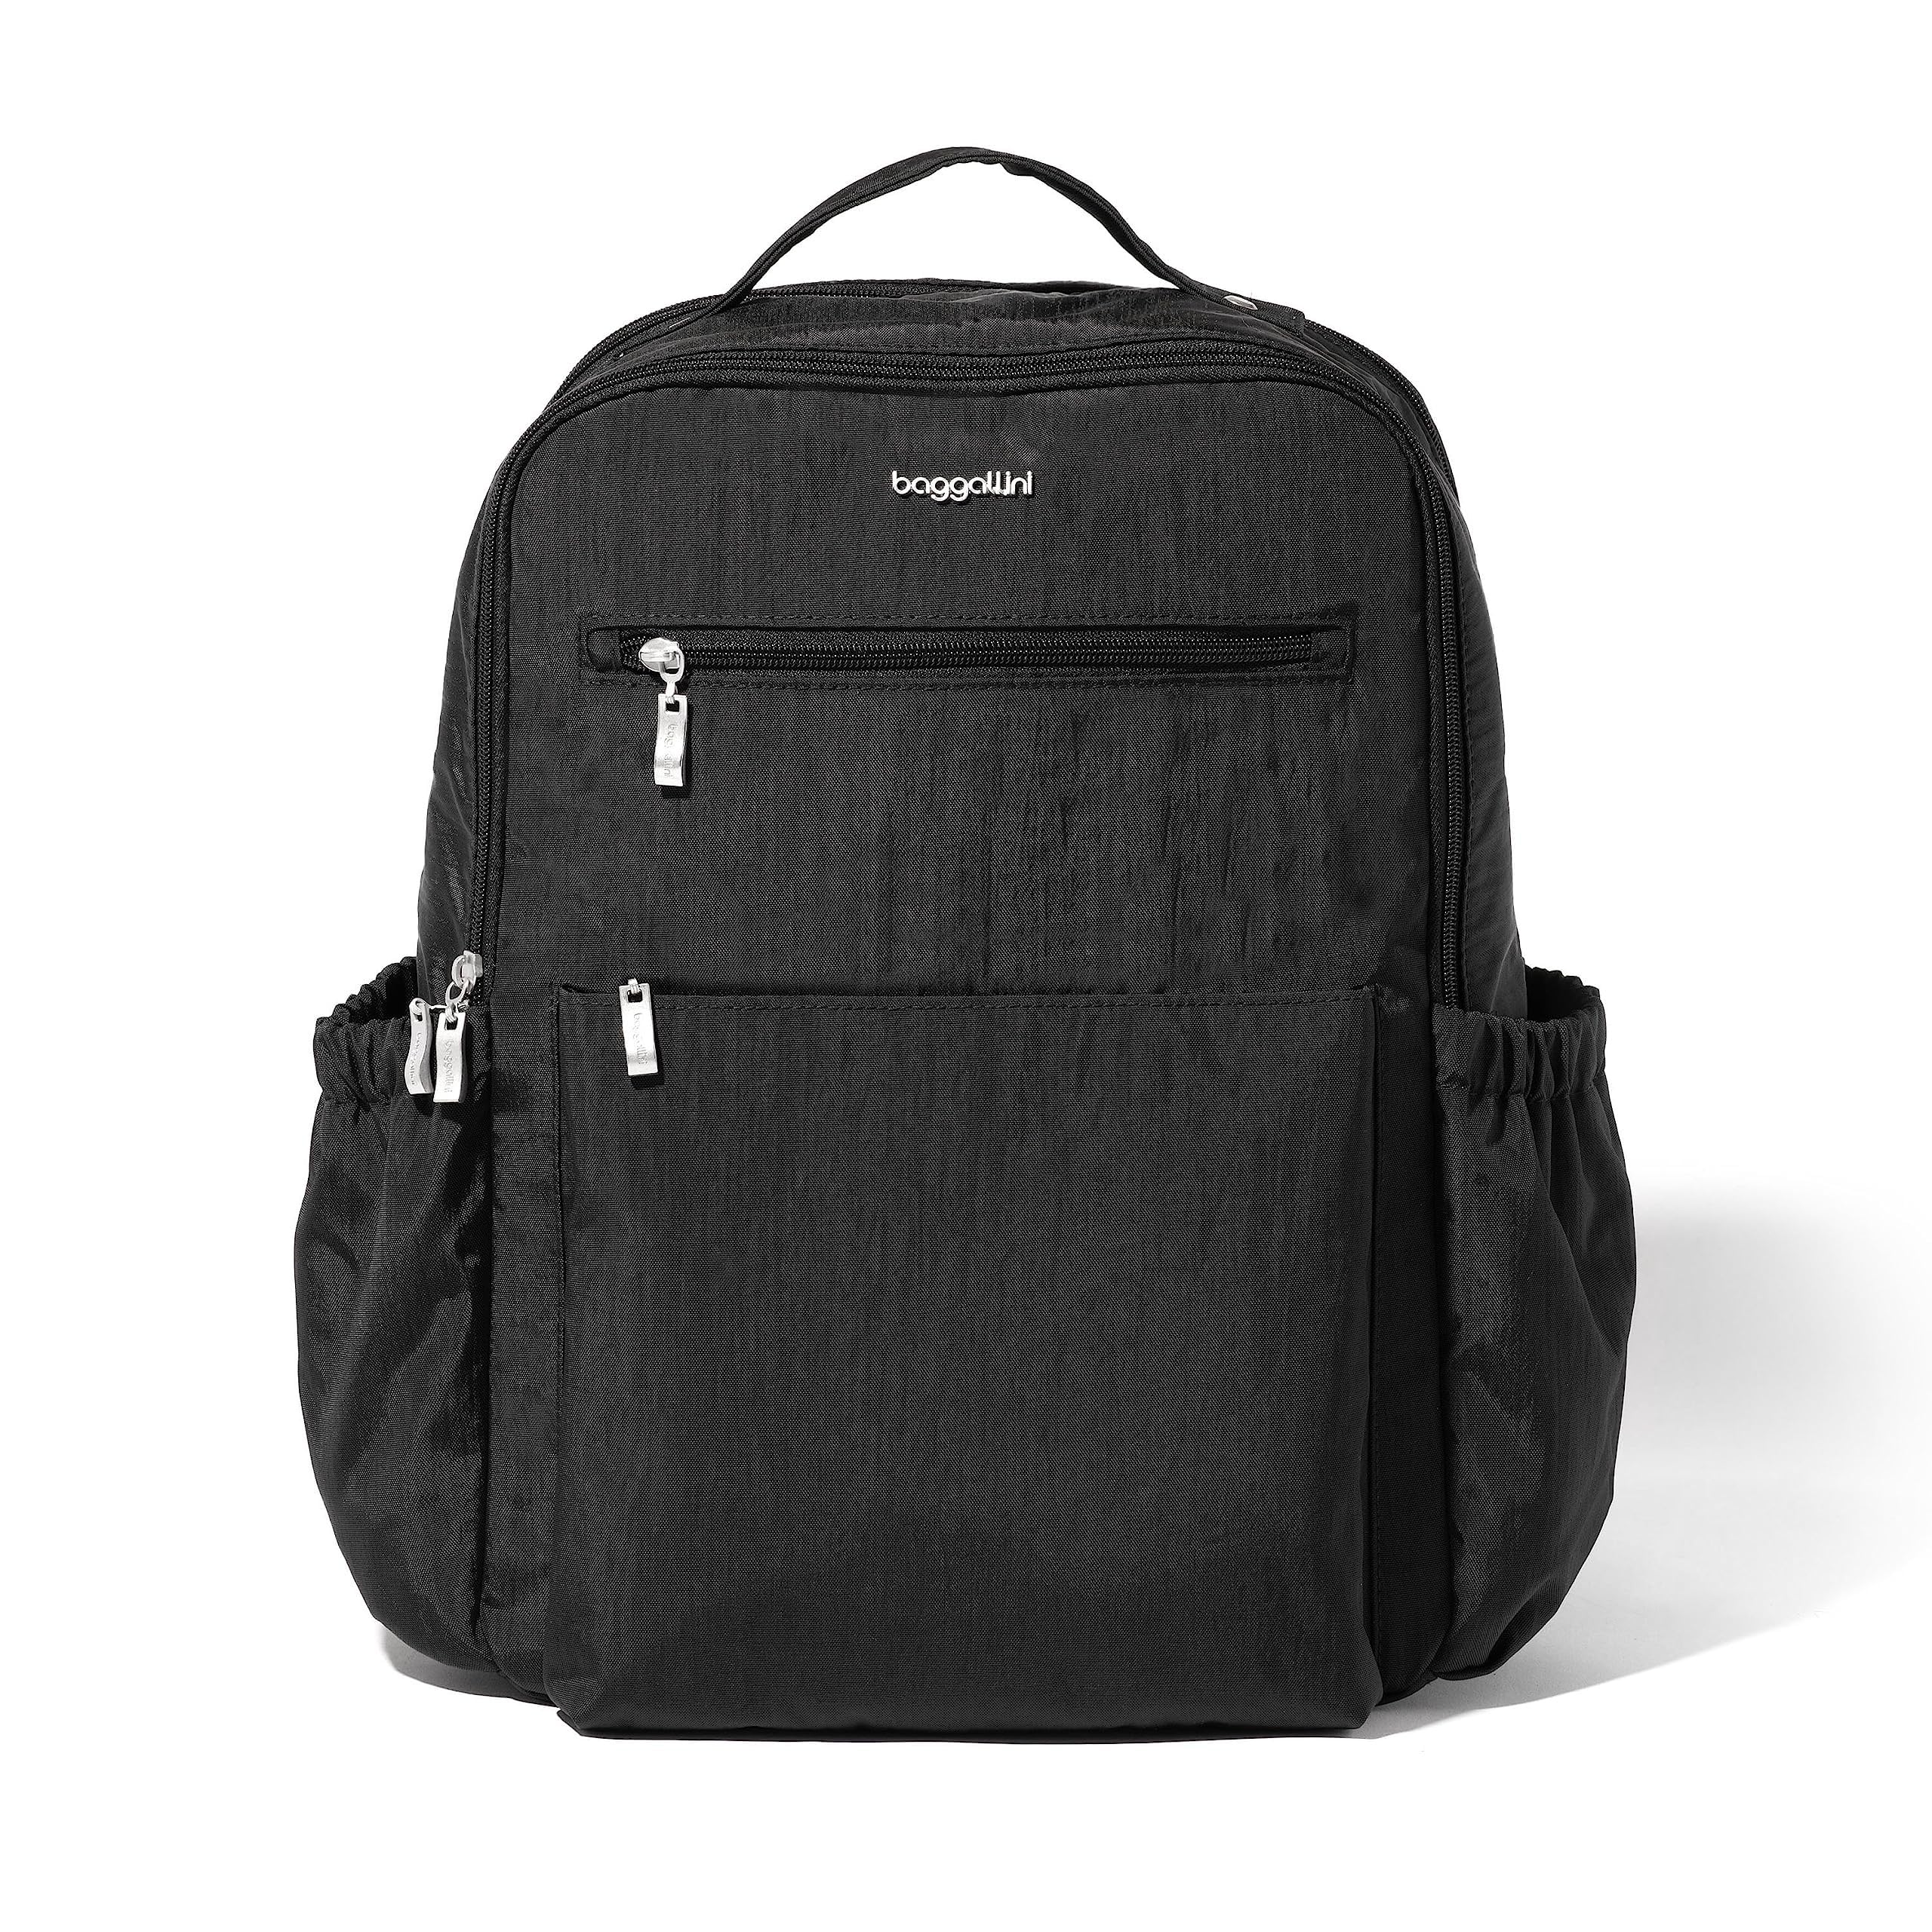 Расширяемый рюкзак для ноутбука Tribeca Baggallini